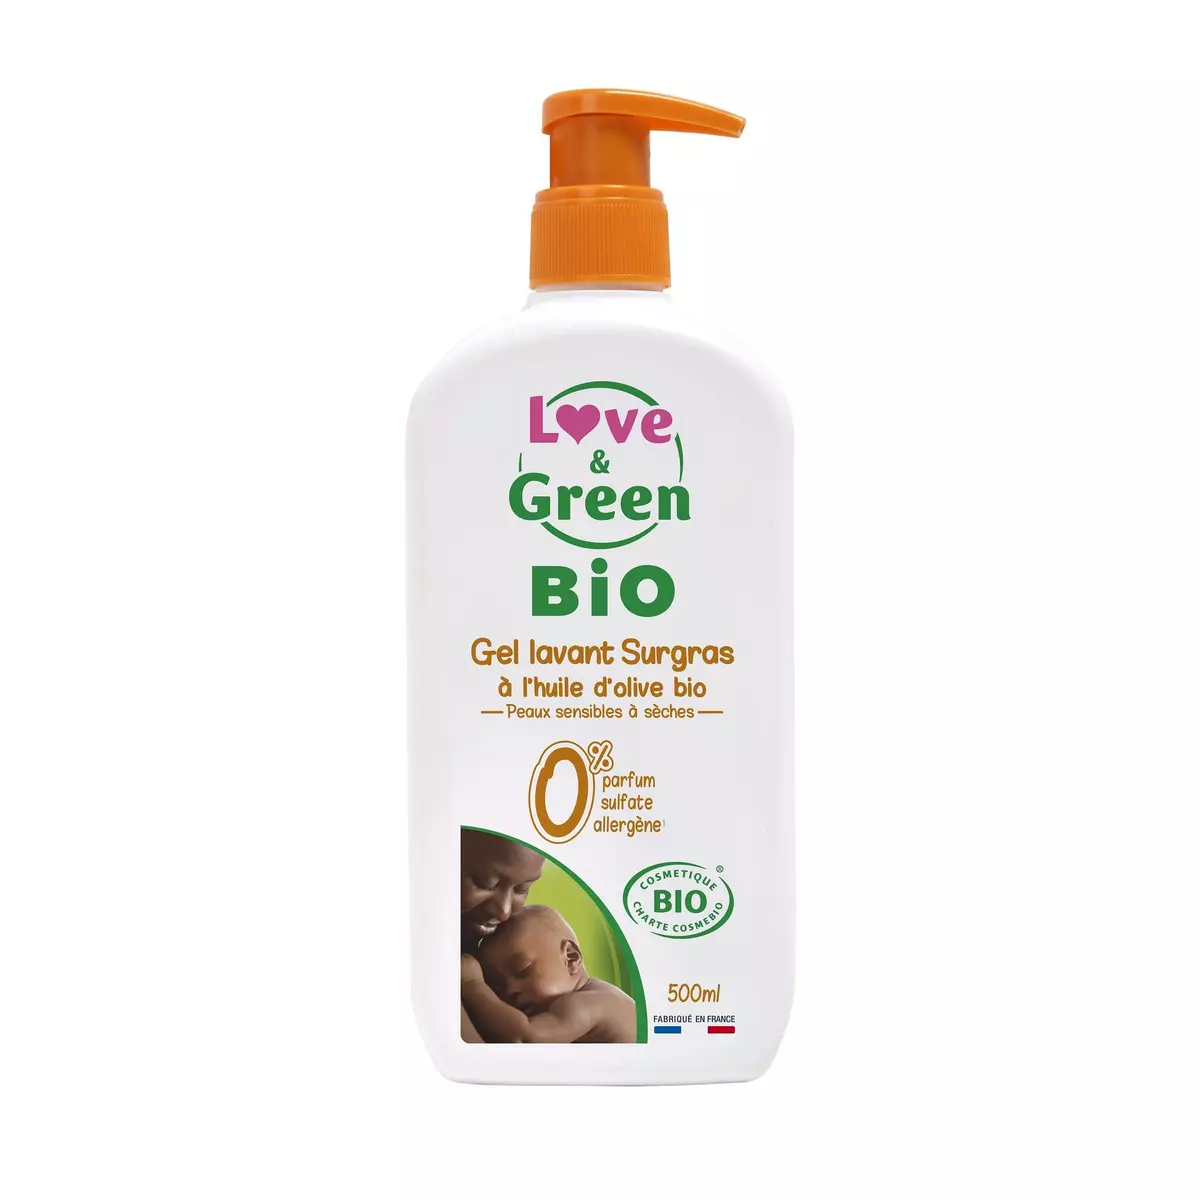 LOVE & GREEN Gel lavant surgras à l'huile d'olive bio peaux sensibles à sèches 500ml